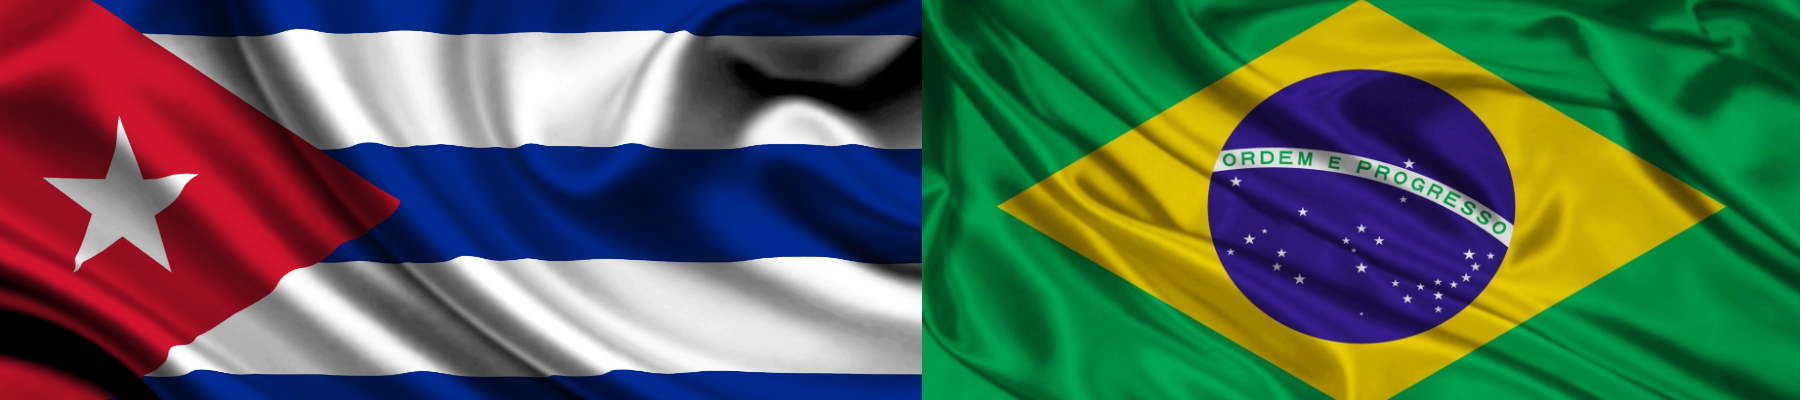 Envío de paquetes a Cuba desde Brasil